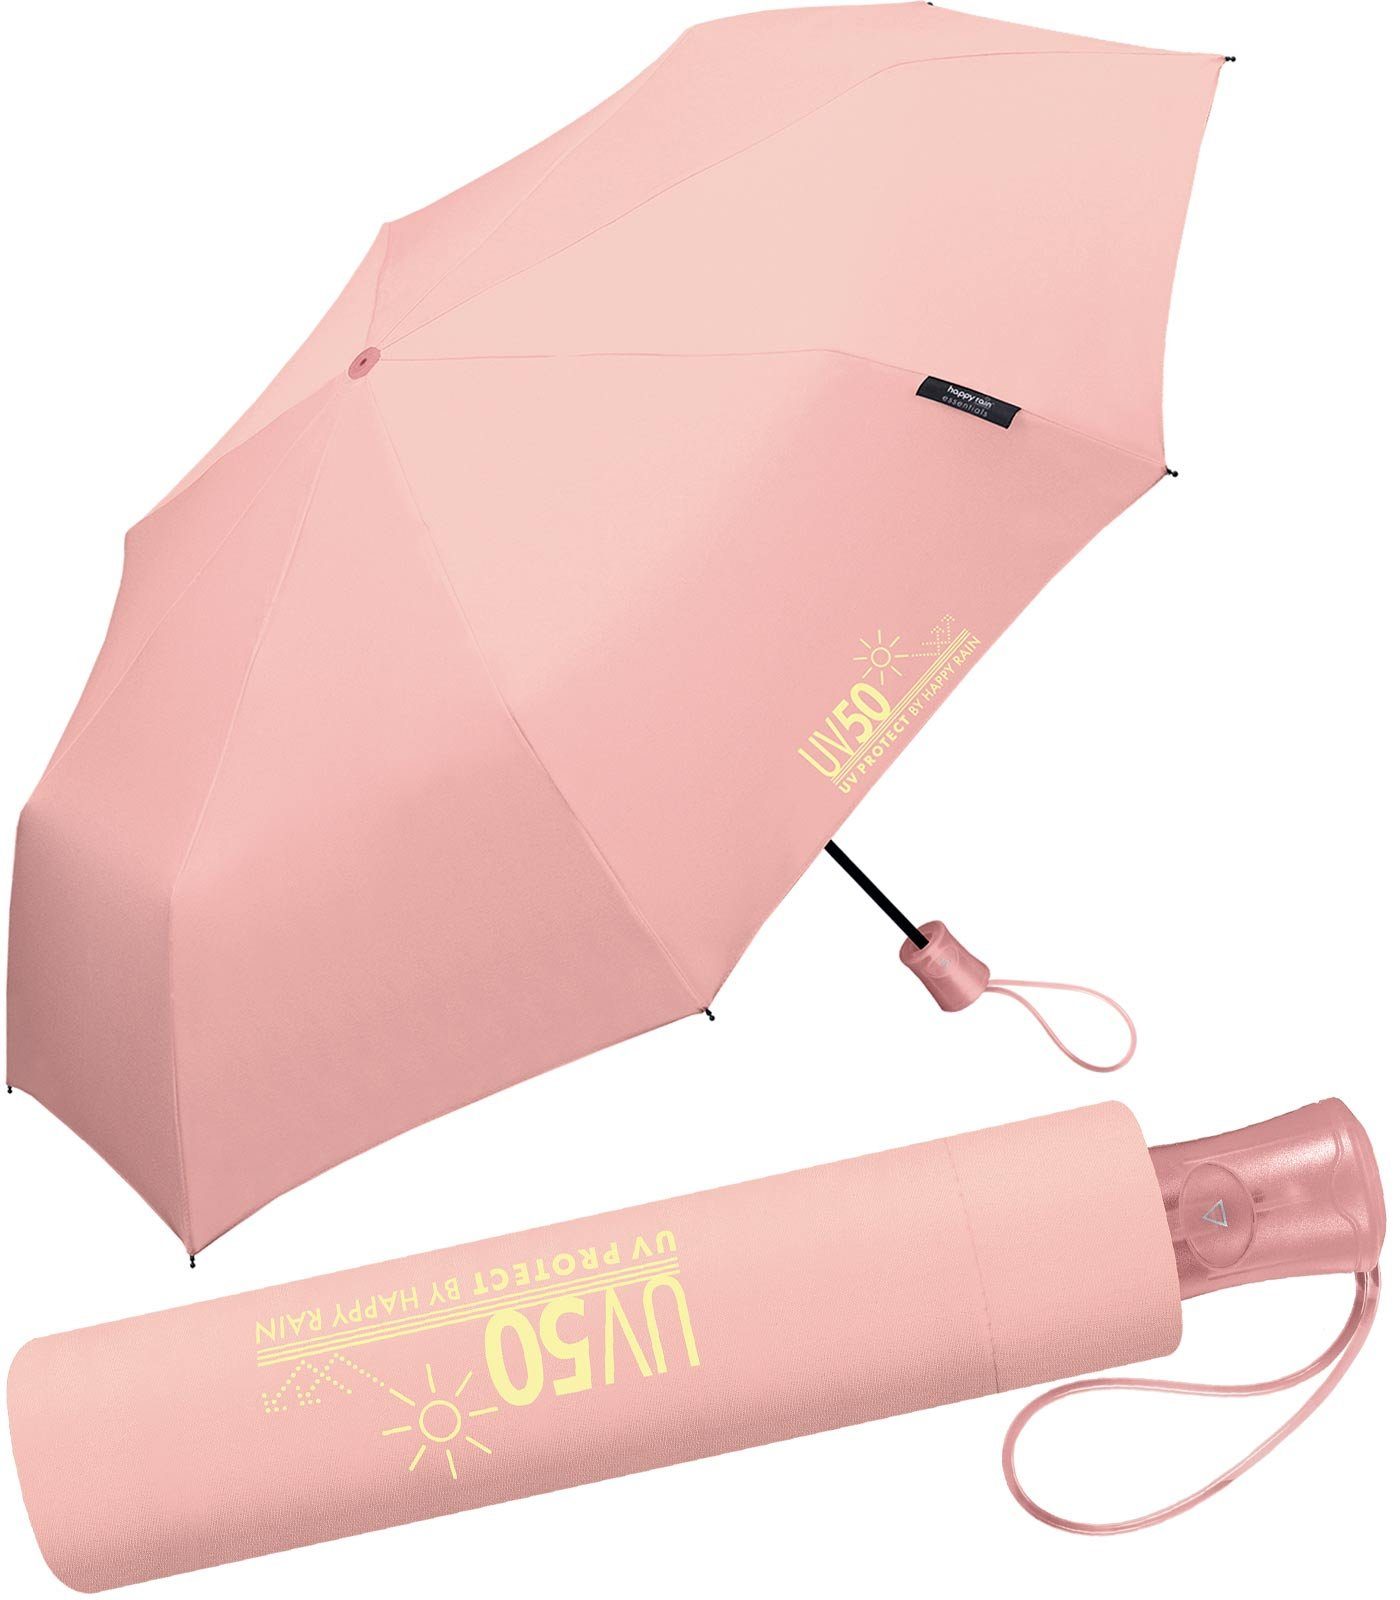 HAPPY RAIN Taschenregenschirm UV-Protect UV50 mit Auf-Automatik und Sonnenschutz, schützt vor Sonne und Regen